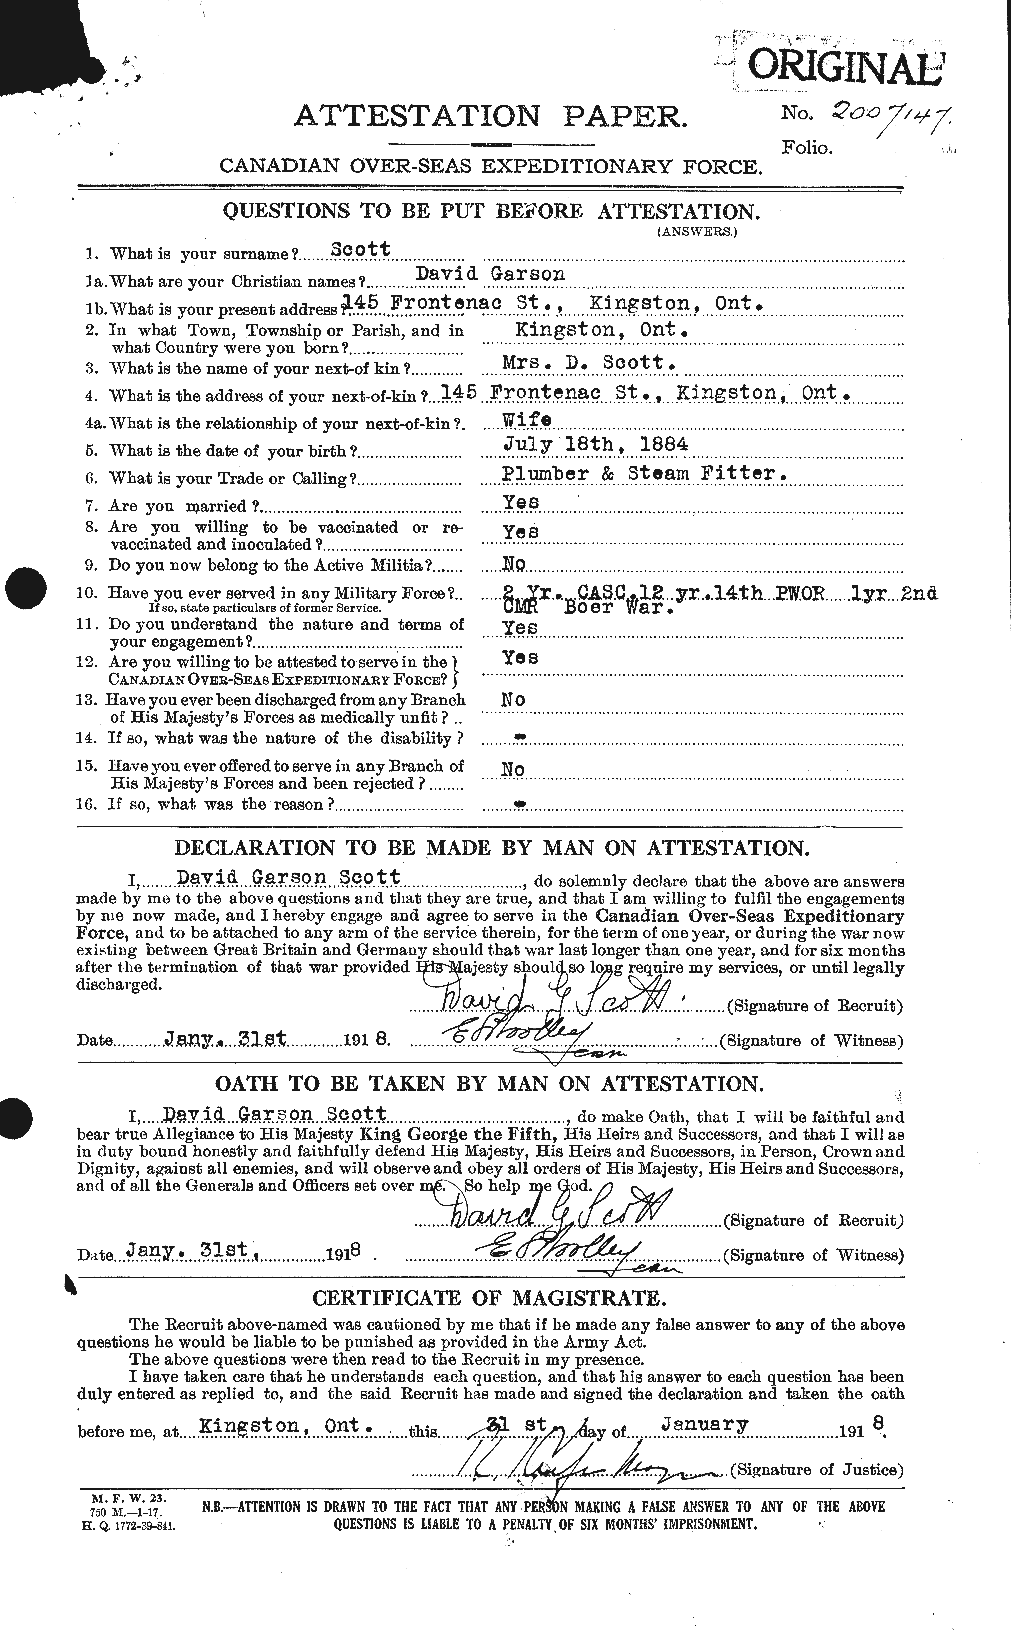 Dossiers du Personnel de la Première Guerre mondiale - CEC 085594a